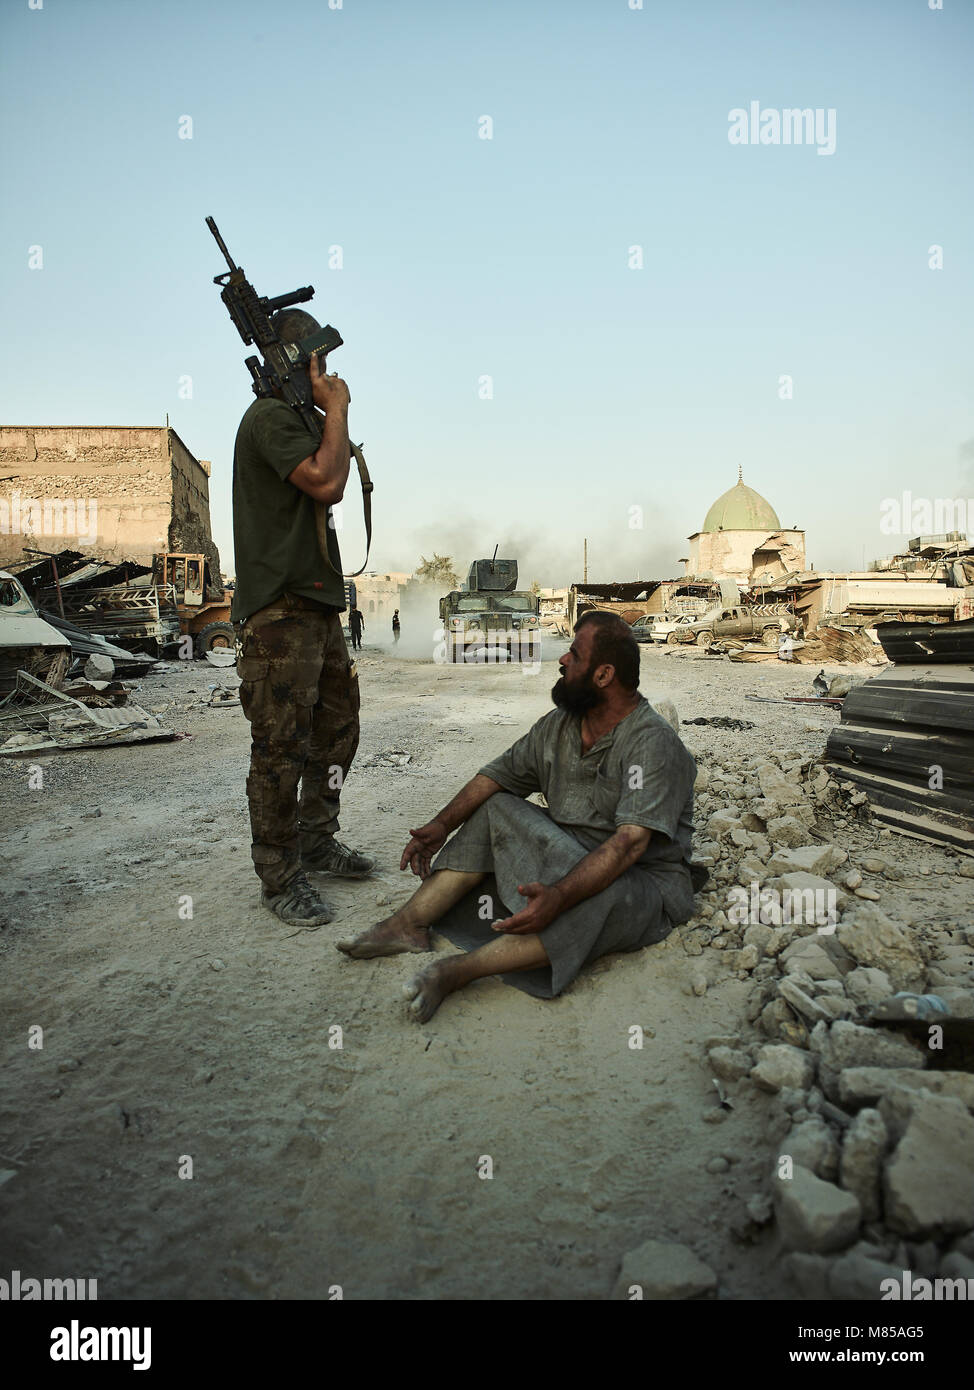 Eine mutmassliche islamische militante festgehalten durch die irakischen Sicherheitskräfte. Die Stadt Mosul im Nordirak hat unter islamischen Staat militanten wurde für 3 Jahre, seit Juni 2014. Im Juli 2017 die Streitkräfte der Koalition geführt von der irakischen Armee hat endlich befreit die Stadt aus der Hand von Terroristen. Stockfoto